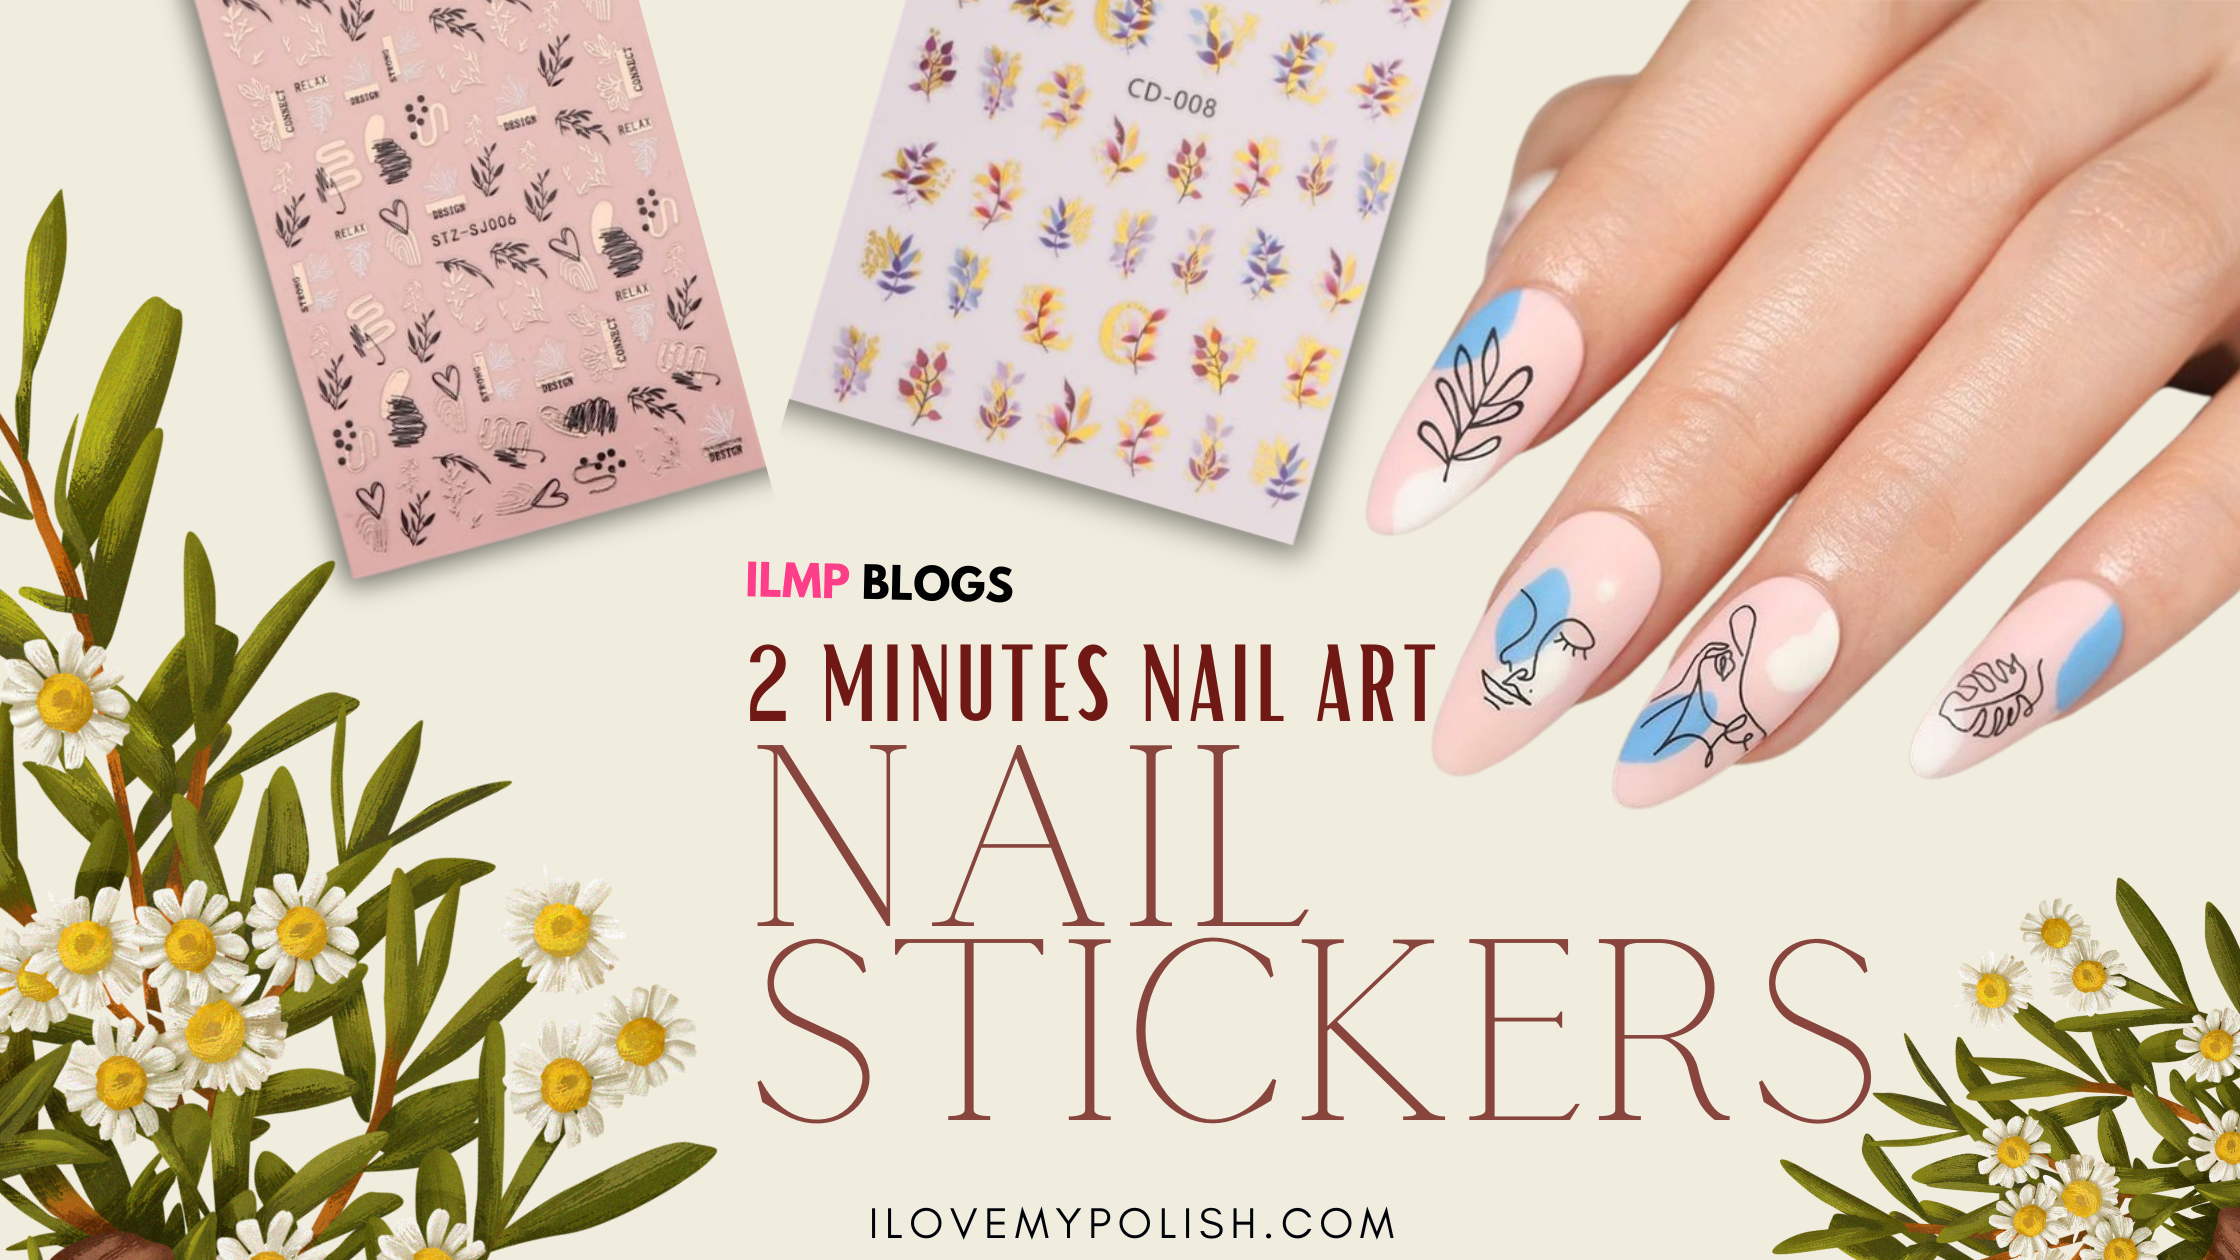 370 Best 3d nail designs ideas | nail designs, 3d nail designs, nail art